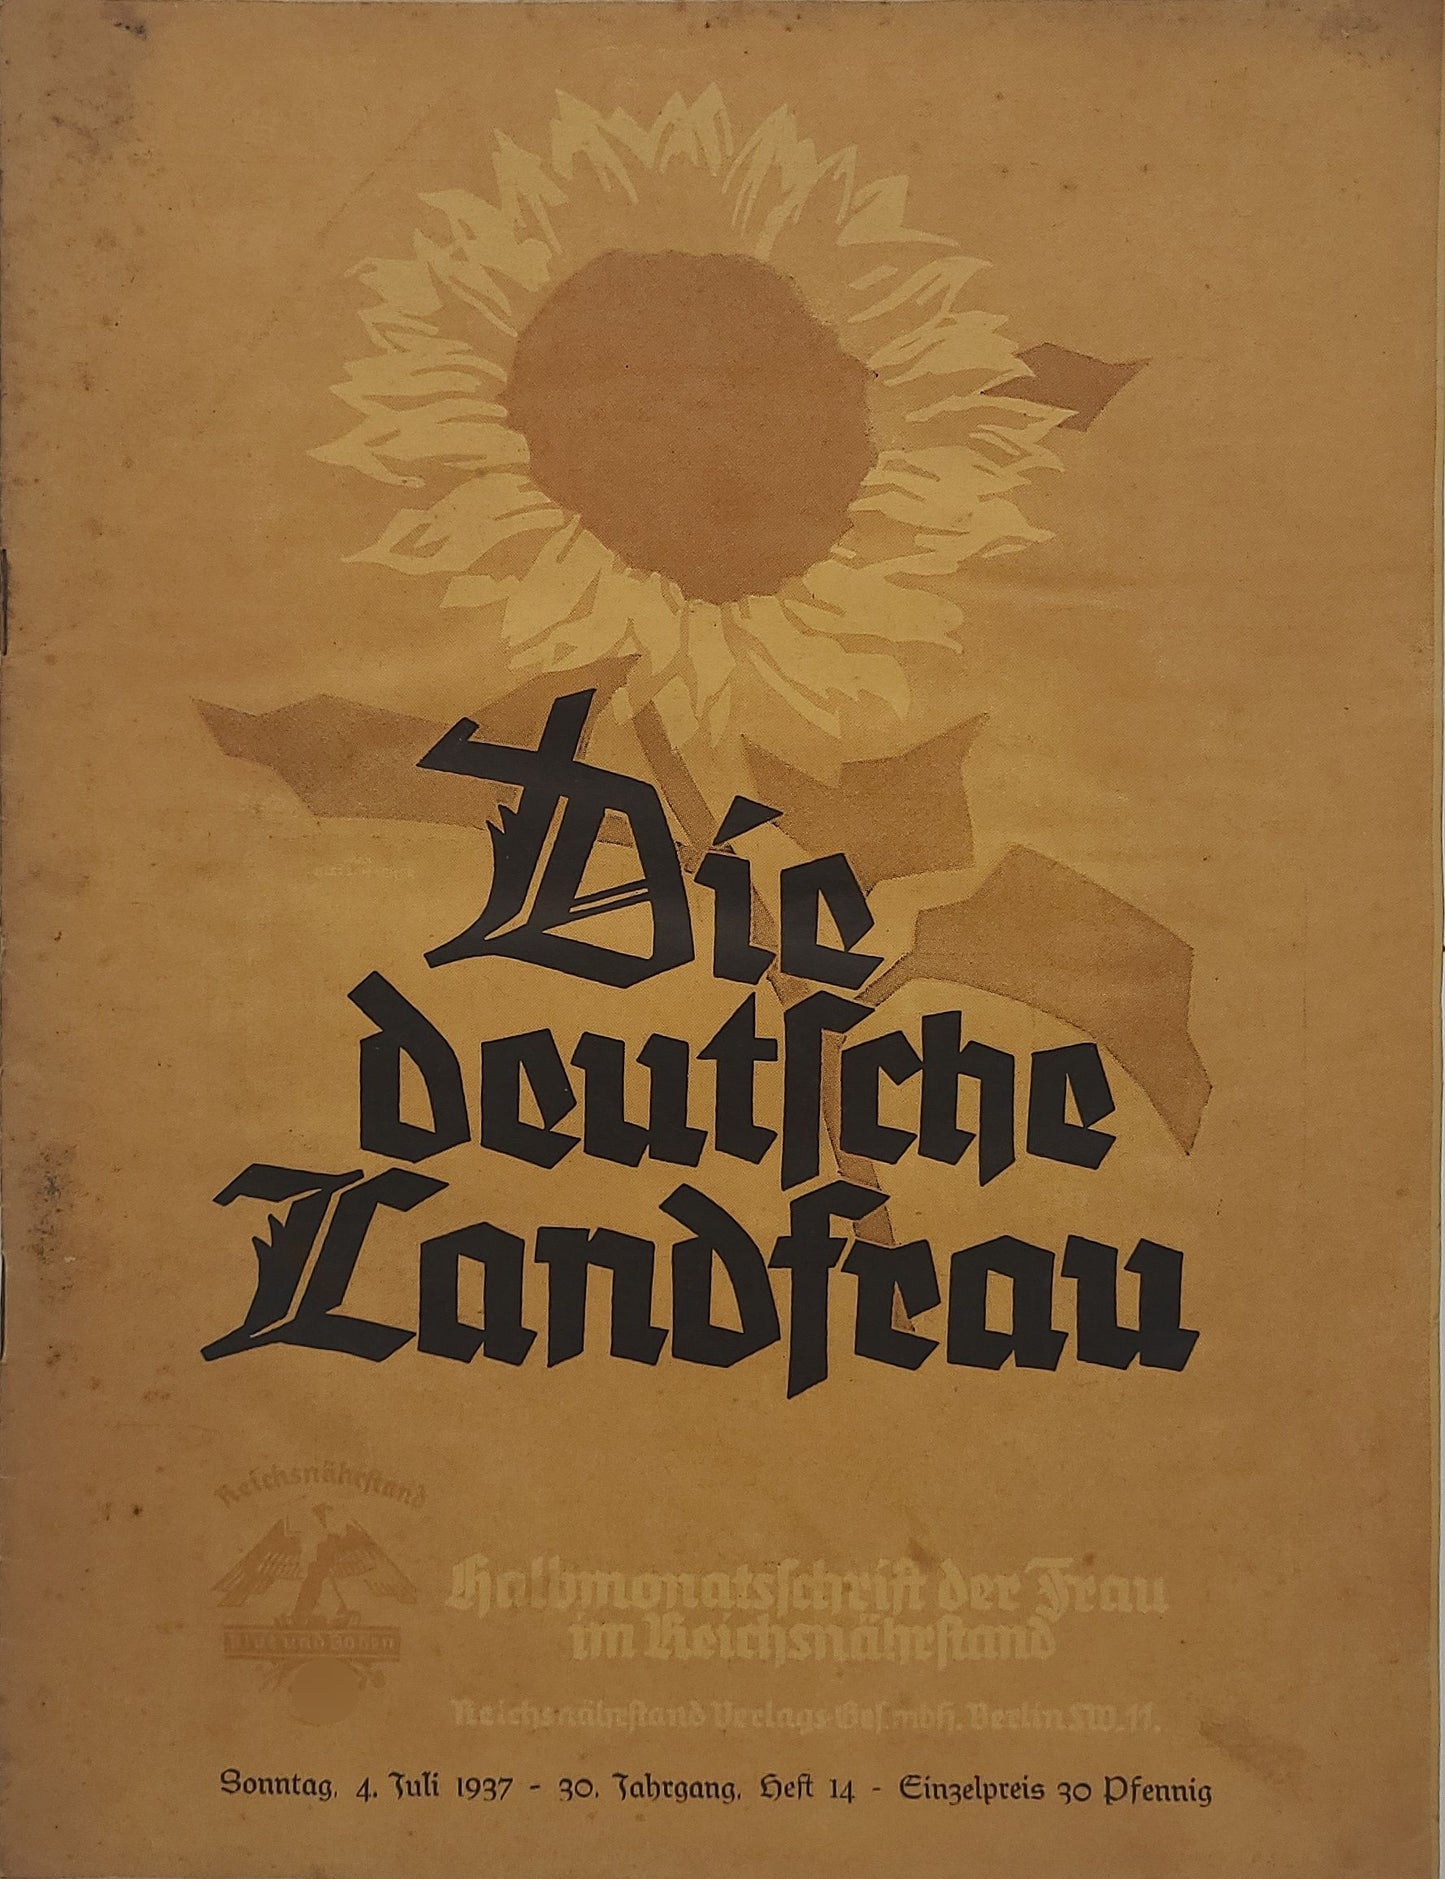 Die deutsche Landfrau (Ausgaben Auswahl)